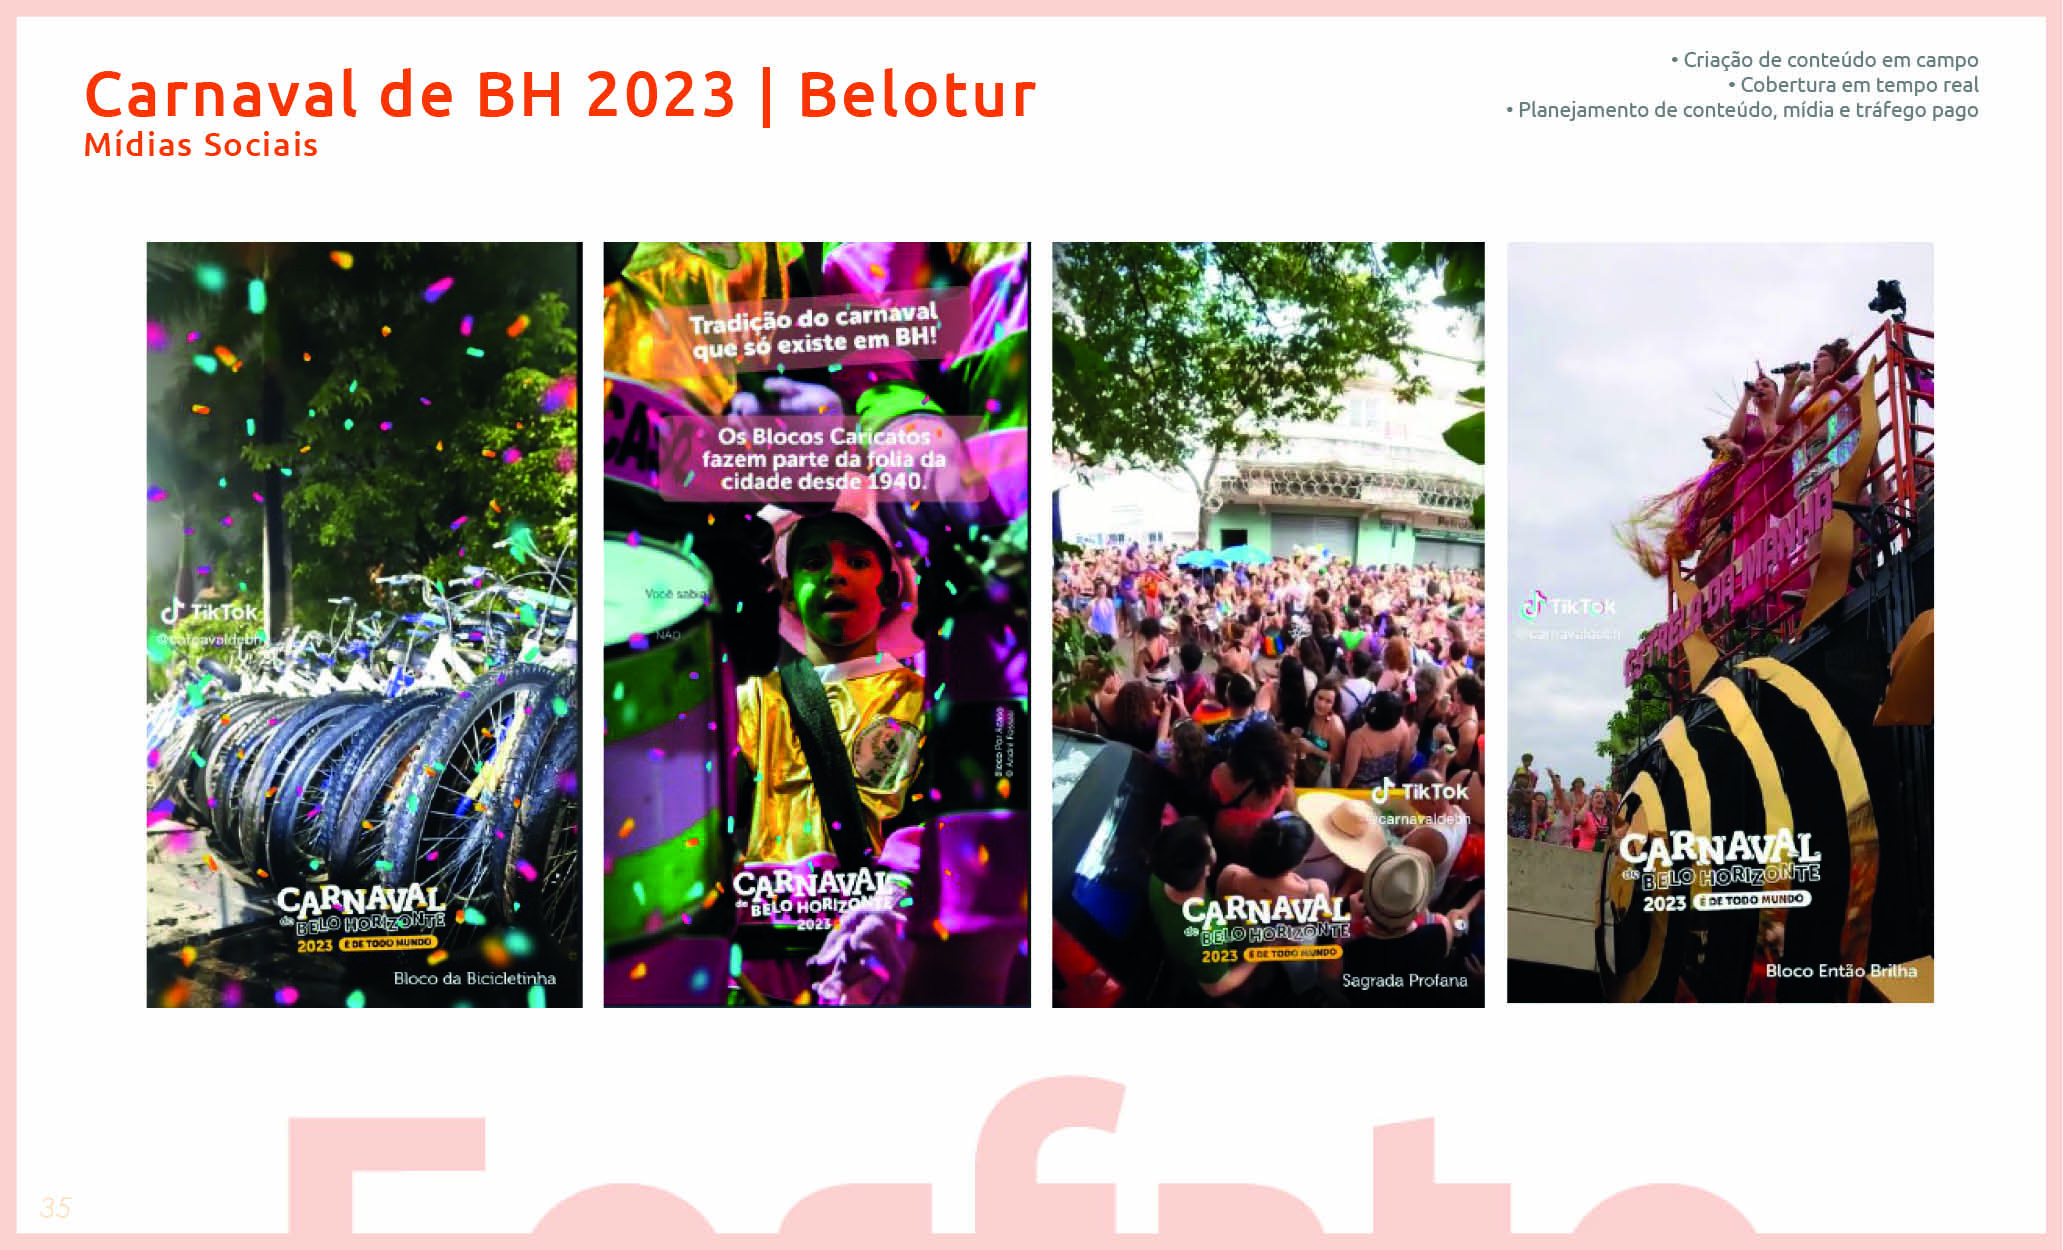 Carnaval de BH 2023 - Belotur 1